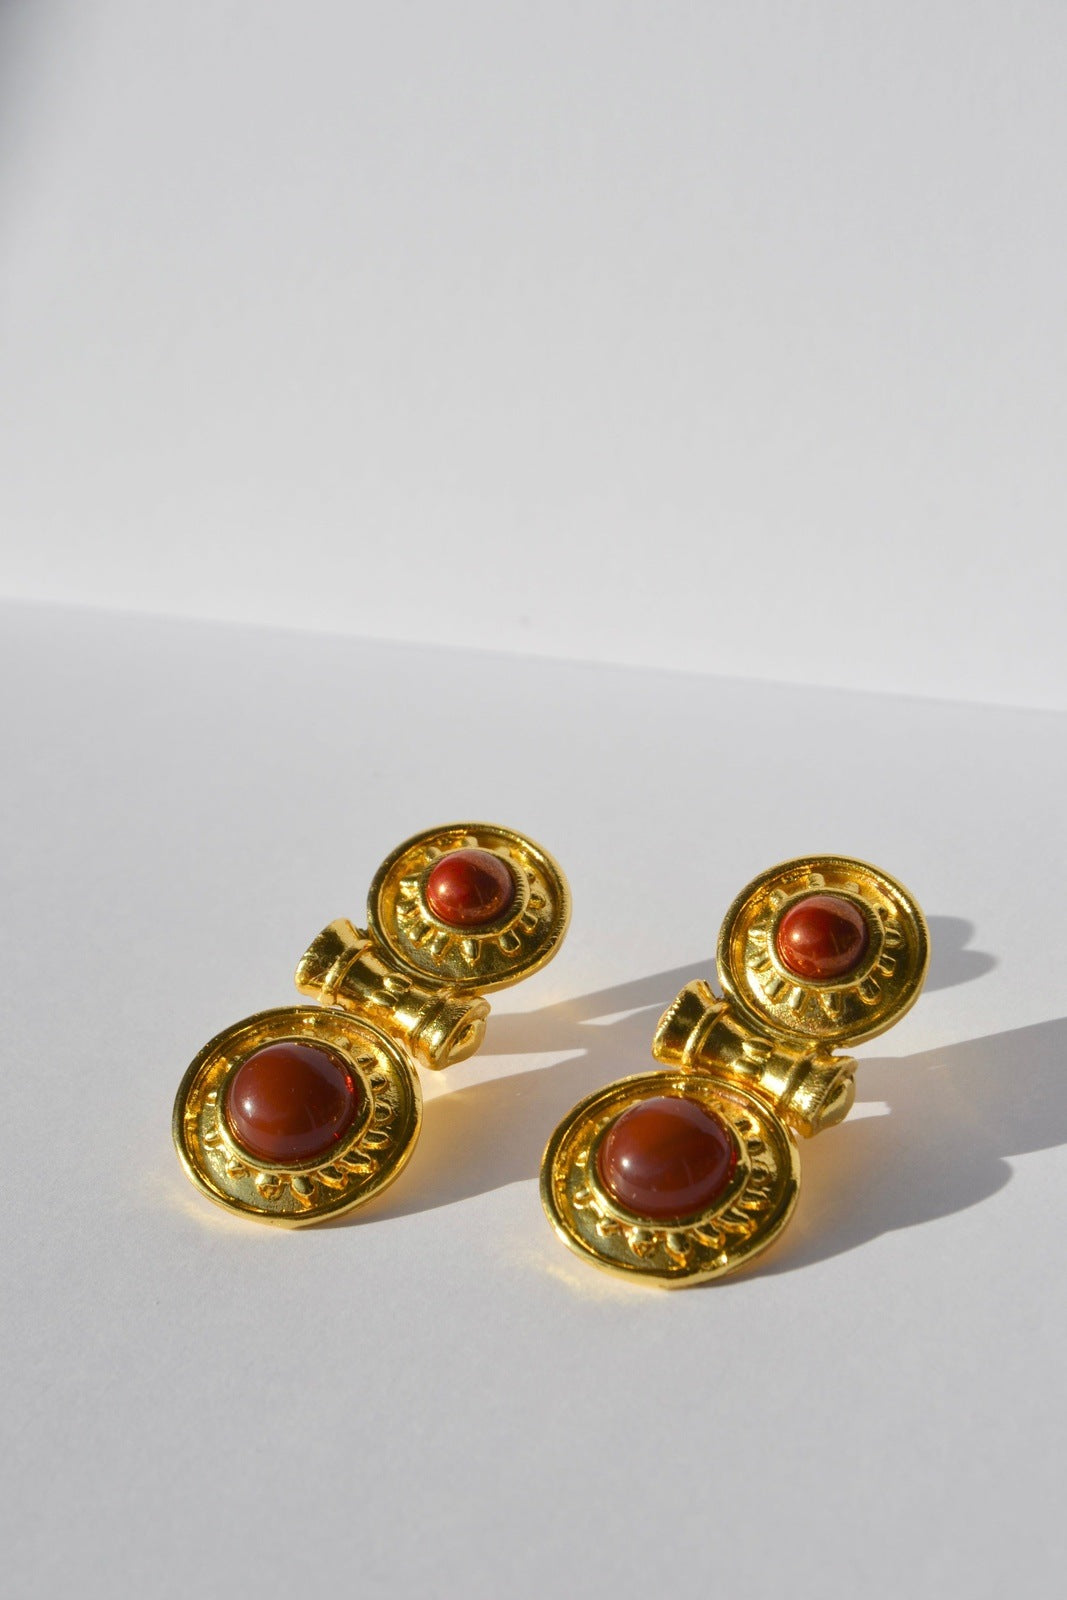 Boucles d'oreilles pendantes, plaquées or,en forme de bouclier, faites main par nos artisans.La divinité des festivités et de la floraison.Clips pour oreilles non percées